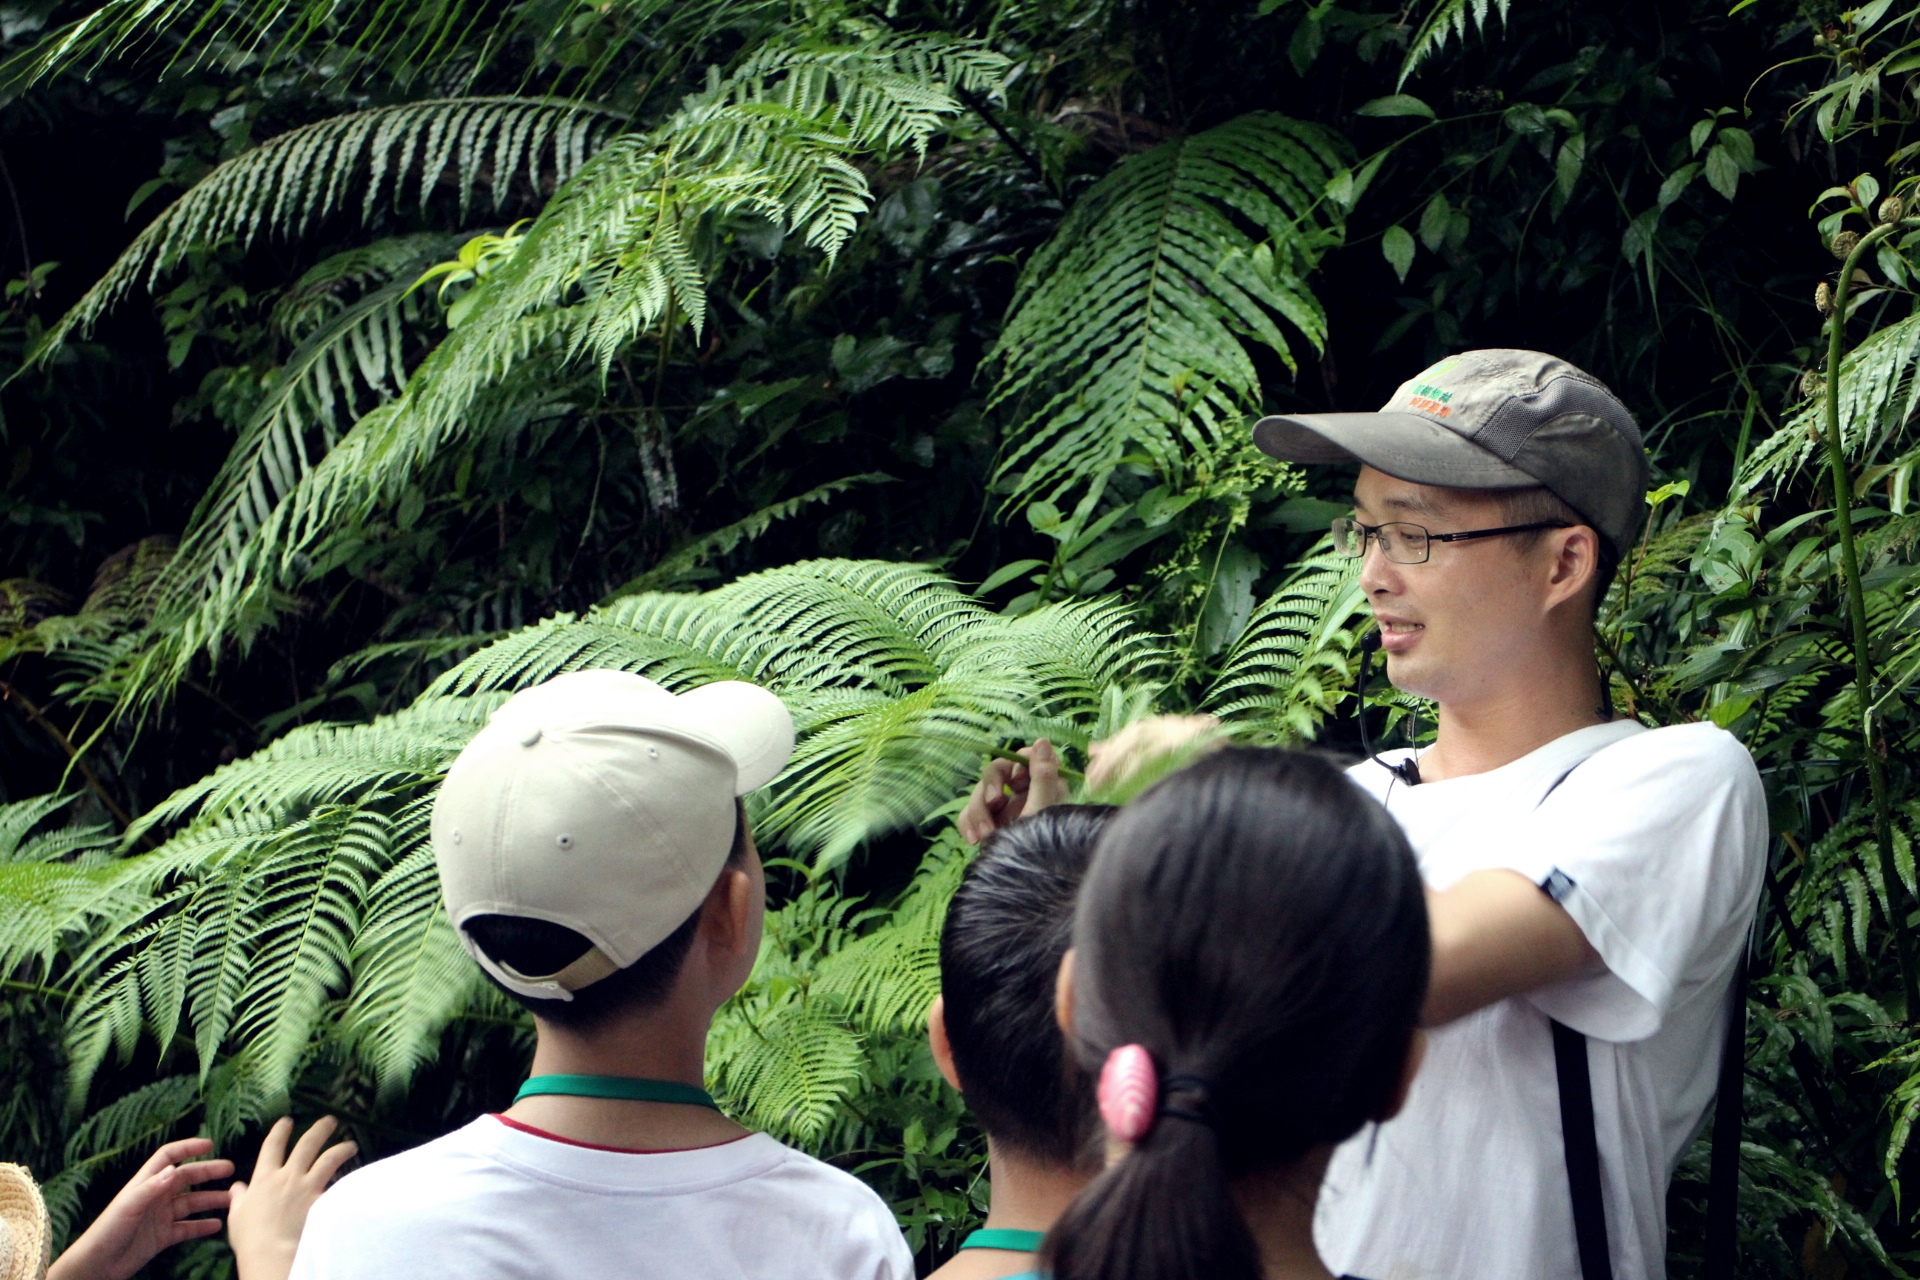 臺北市內溝溪擁有豐富蕨類生態，親身體驗自然教室，小朋友受益良多。